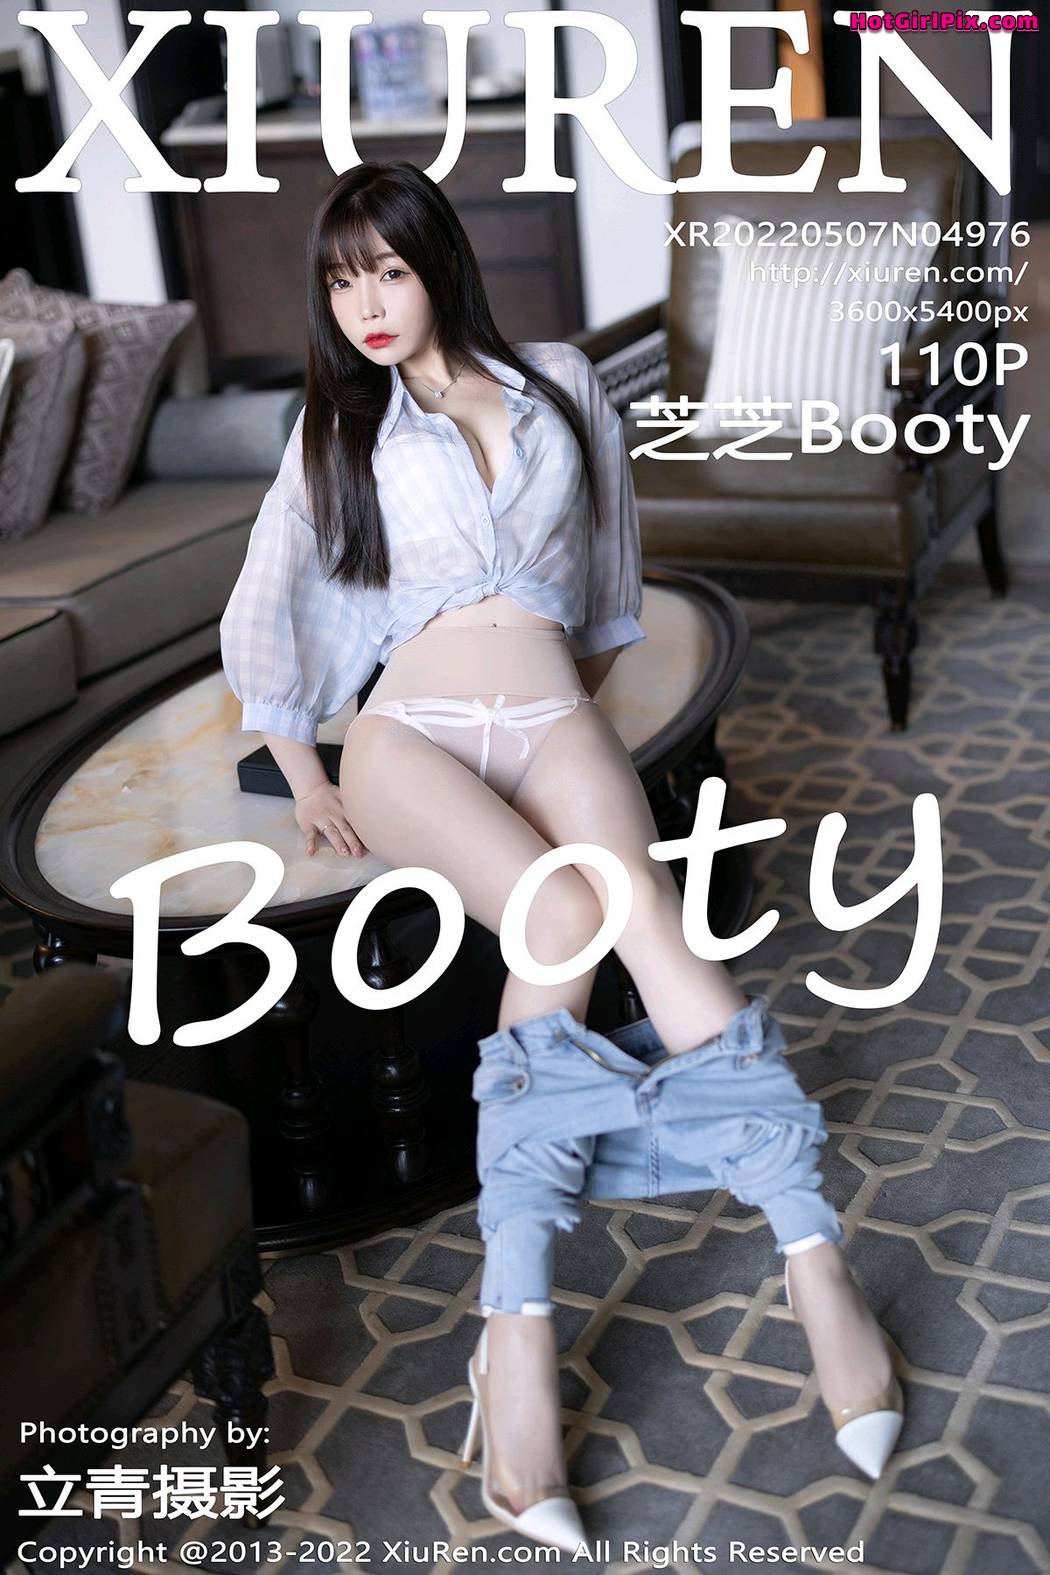 [XIUREN] No.4976 Booty 芝芝 Cover Photo